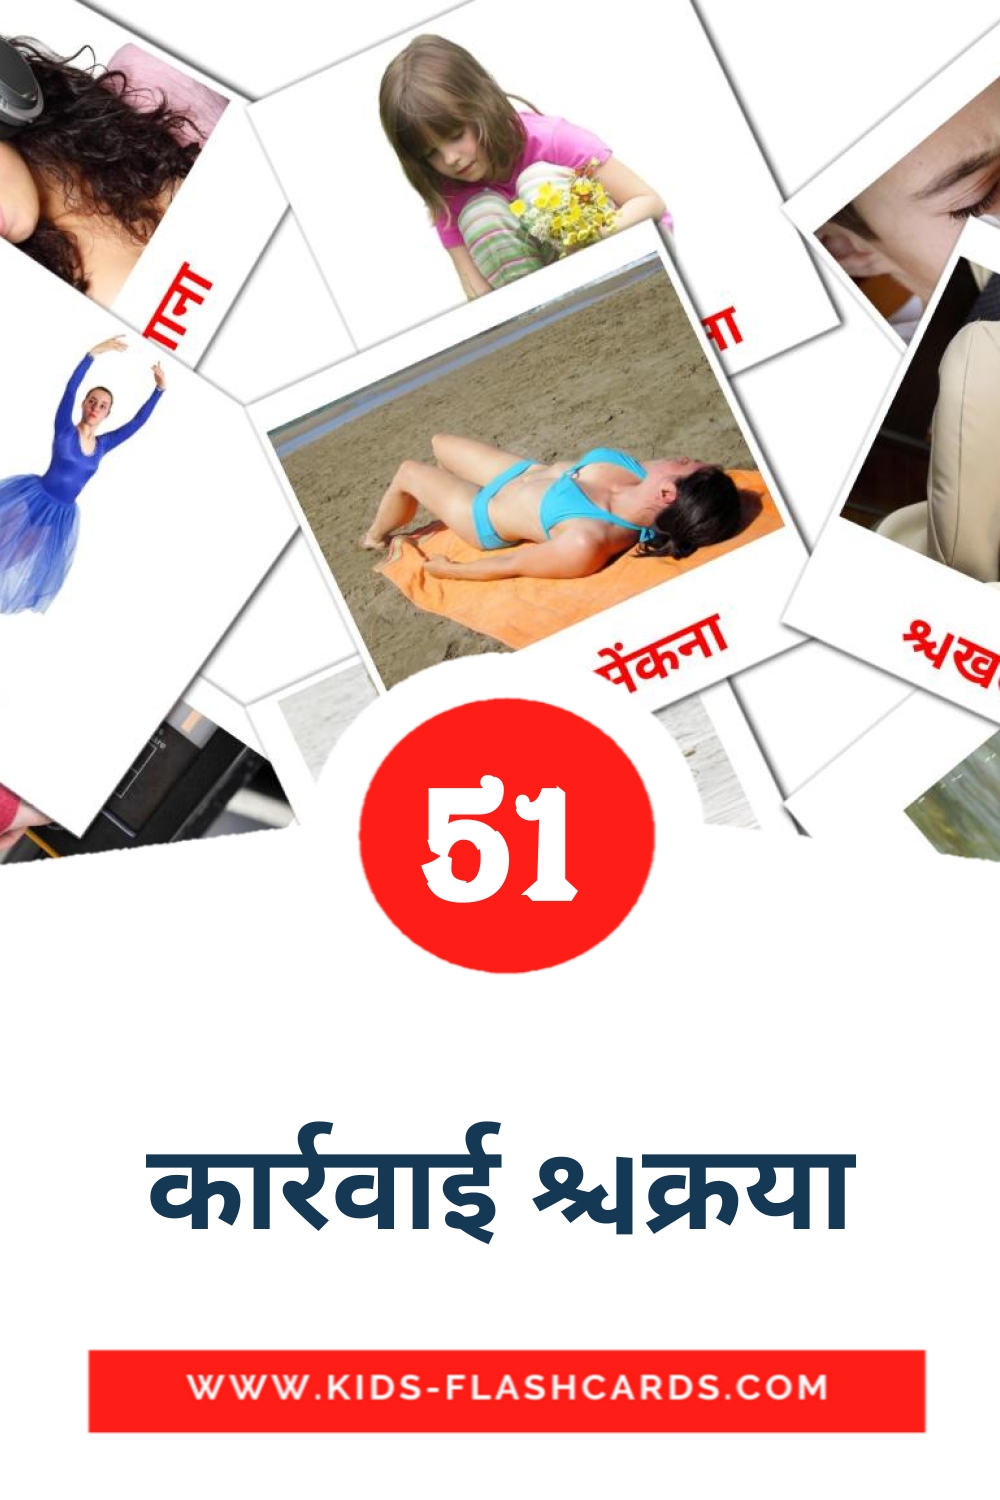 51 कार्रवाई क्रिया Bildkarten für den Kindergarten auf Hindi